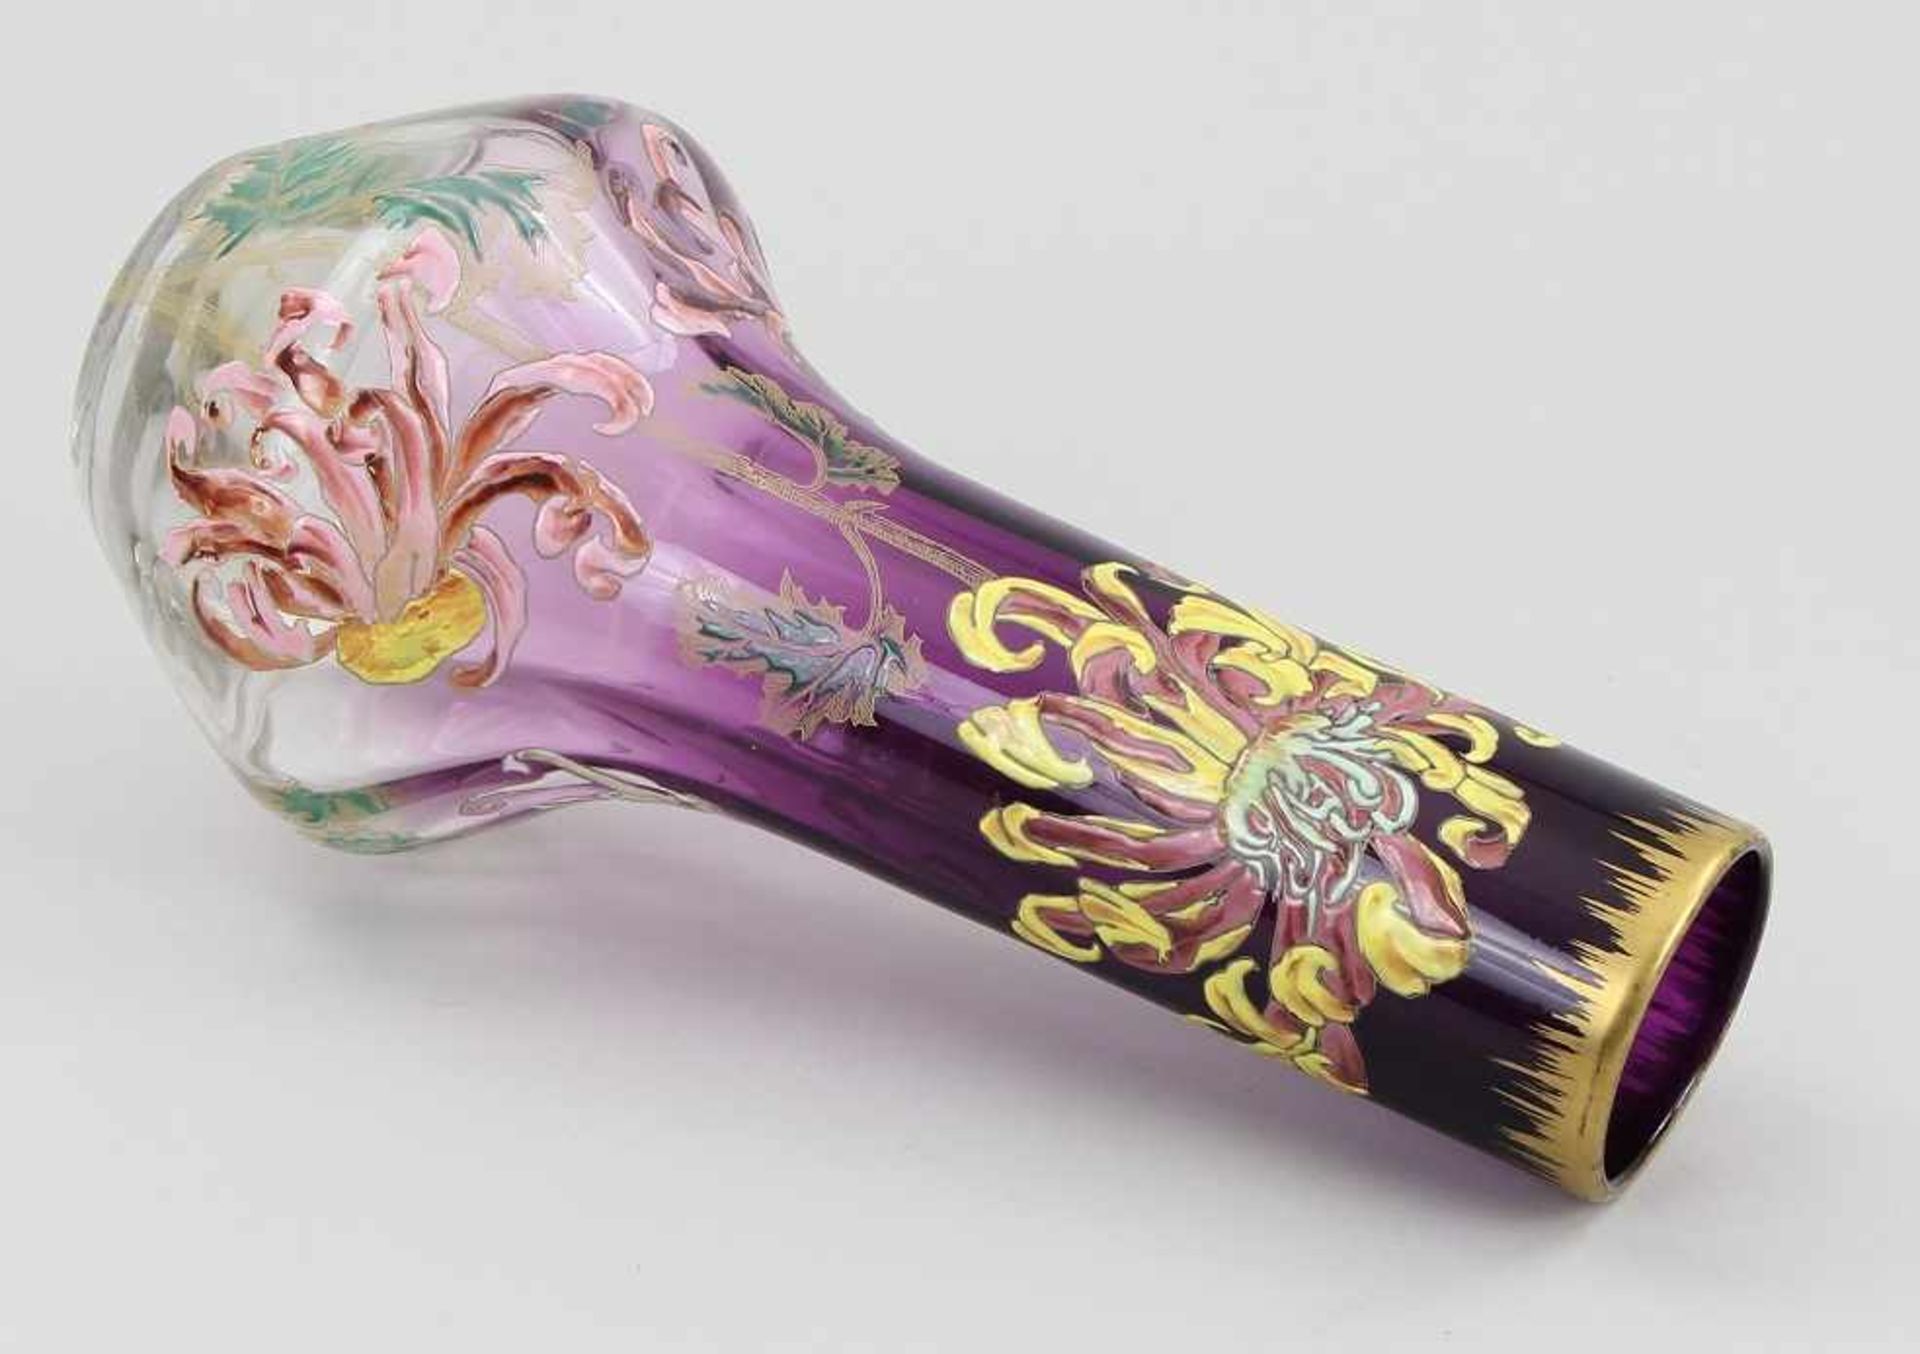 Legras - Vase Farbloses und amethystfarbenes Glas modelgeblasen, pastose farbige Emailbemalung mit - Bild 3 aus 4